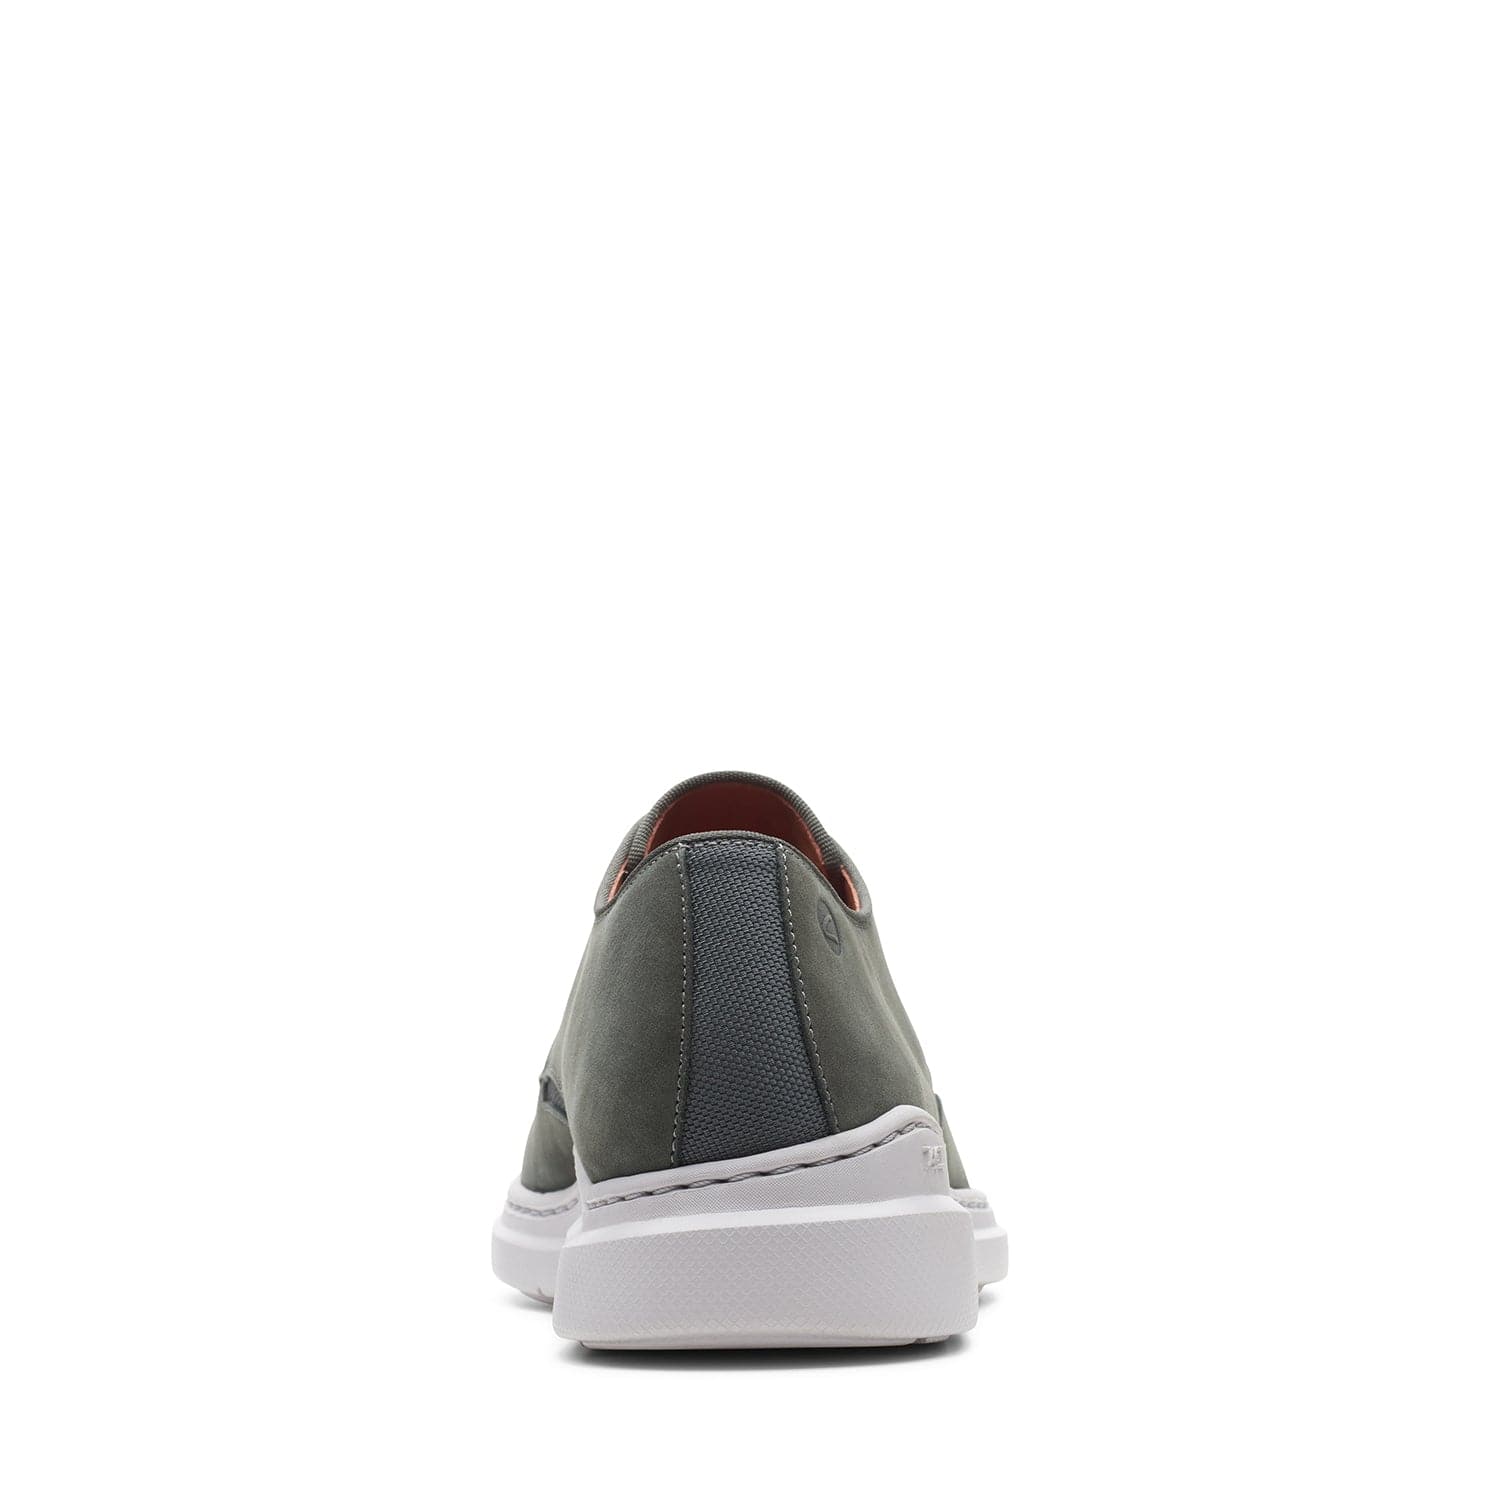 Clarks Dennet Low Shoes - Dark Grey Nubuck - 261635787 - G Width (Standard Fit)